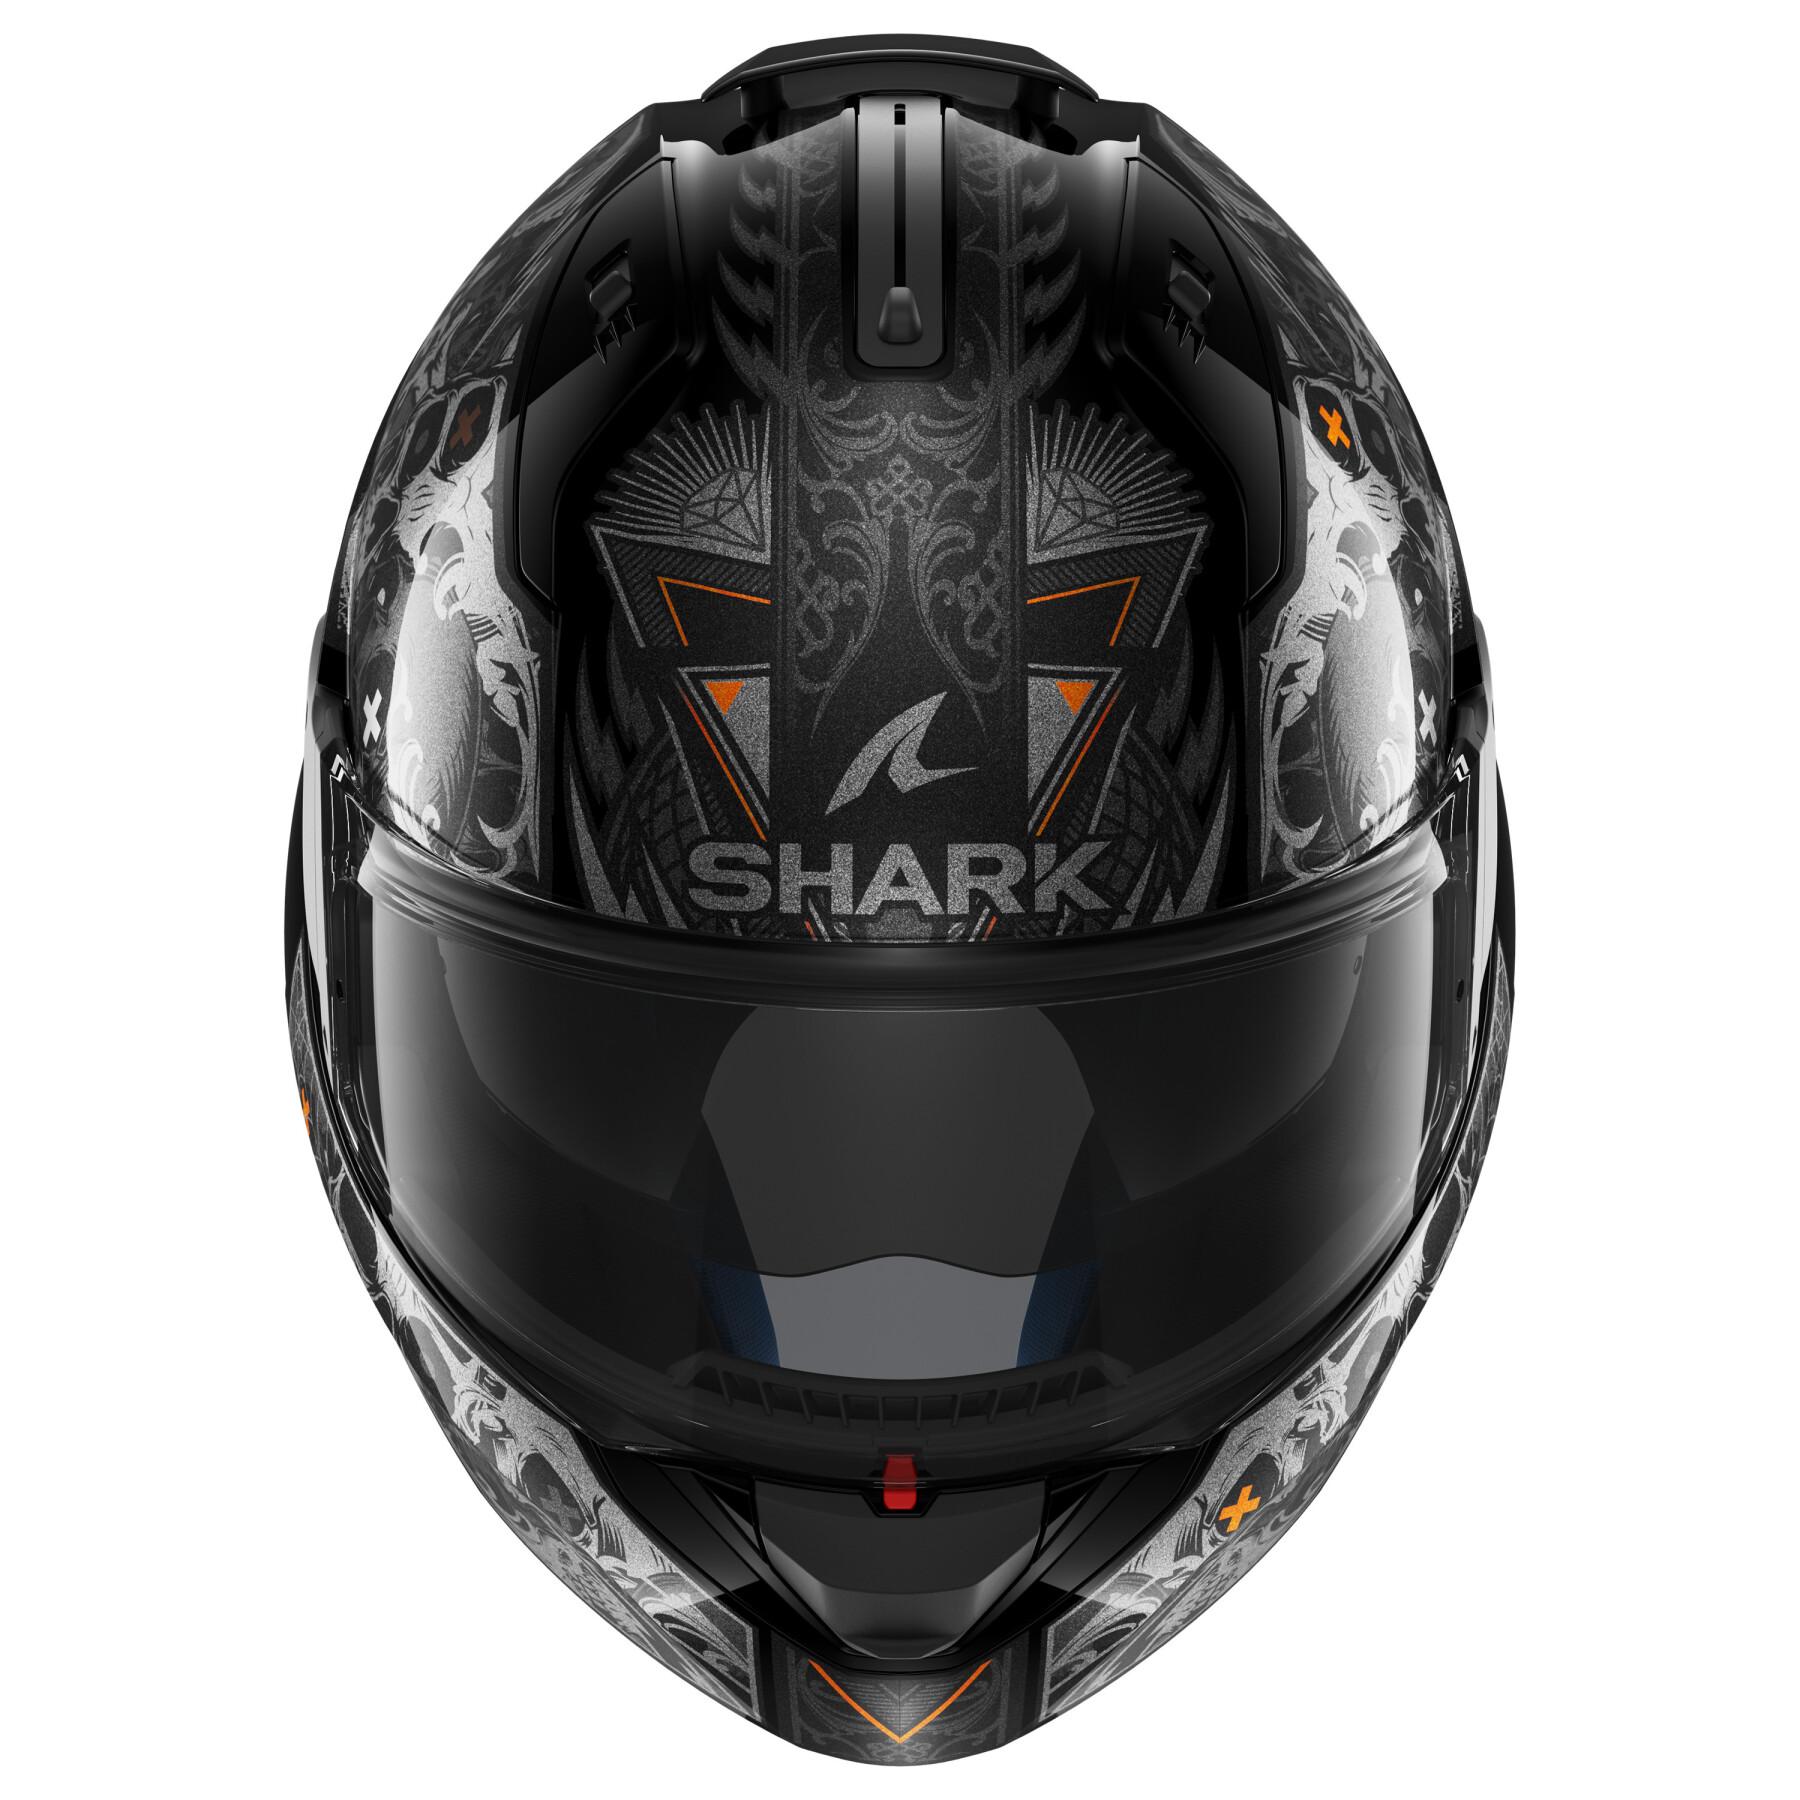 Modulär motorcykelhjälm Shark Evo Es K-Rozen Black Anthracite Orange